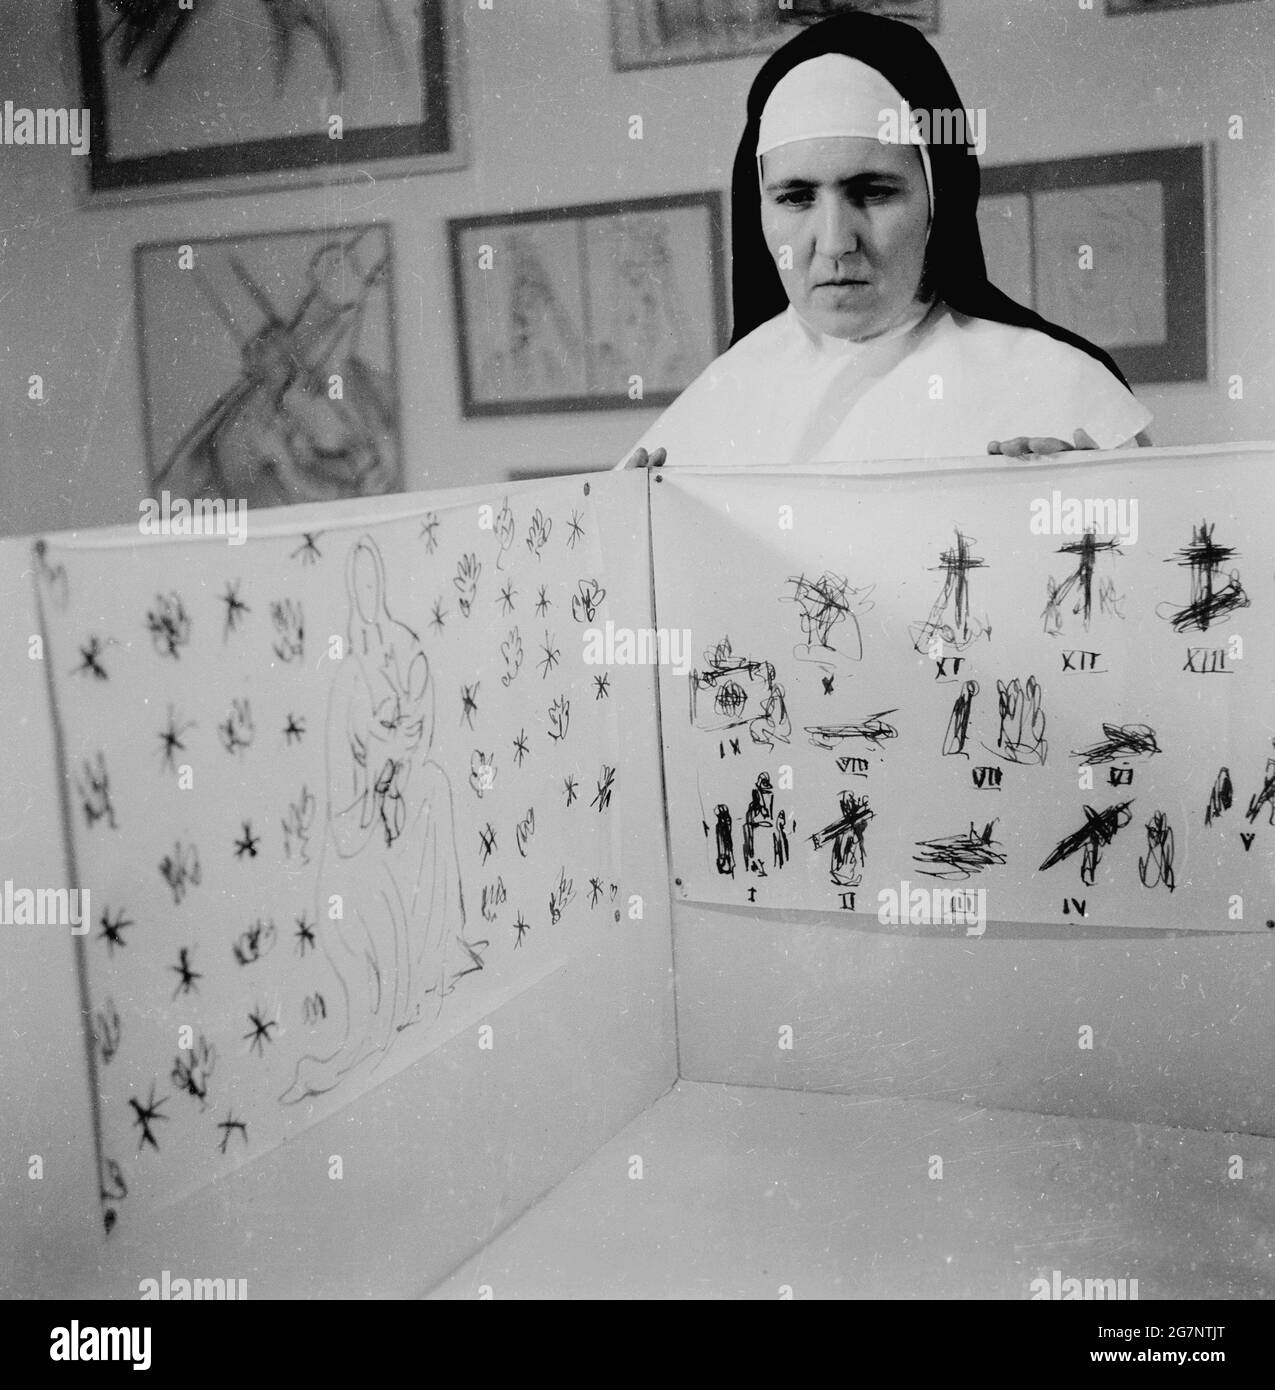 1951, Zeichnungen des französischen Künstlers Henri Matisse, in einer Ausstellung. Eine Dominikanerin, die die Skizzen von Matisse für das Innere der Chapel de Vence in Frankreich zeigt, einer kleinen katholischen Kapelle an der französischen Riviera. Sie wurde zwischen 1947 und 1951 nach Plänen und Zeichnungen von Matisse erbaut und dekoriert, der mit 77 Jahren mit der Arbeit an dem Projekt begann. Er wurde von einer jungen Krankenschwester, die ihn nach seiner Krankheit betreut hatte und die in das Dominikanerkloster in Vence eingetreten war, bei der Gestaltung der Kapelle um Hilfe gebeten. Stockfoto